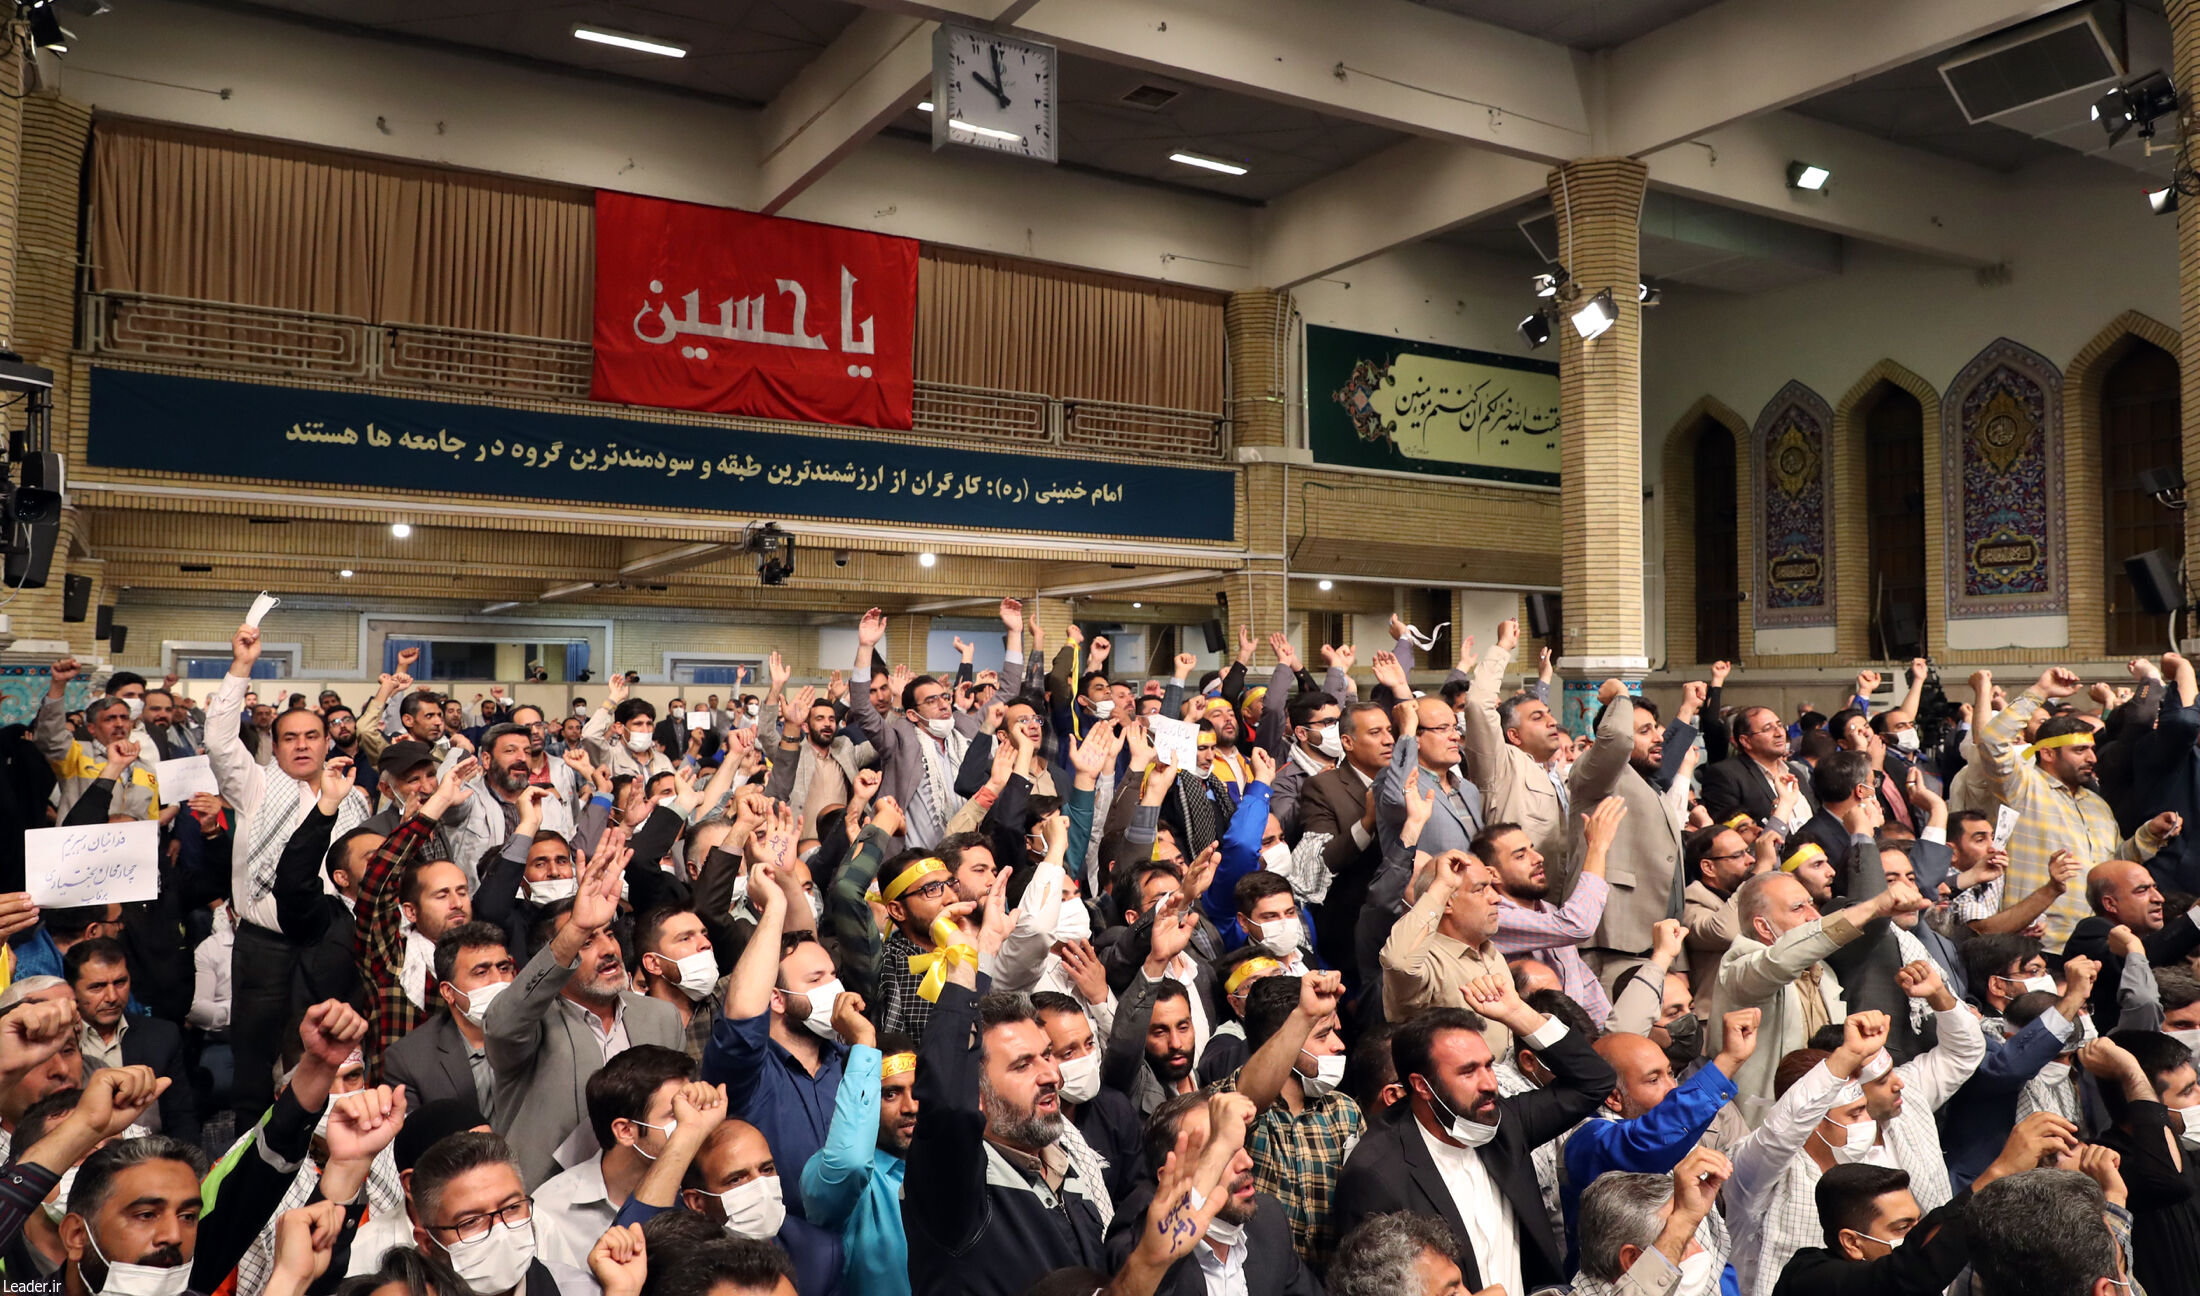 دیدار کارگران با رهبر انقلاب اسلامی + تصاویر